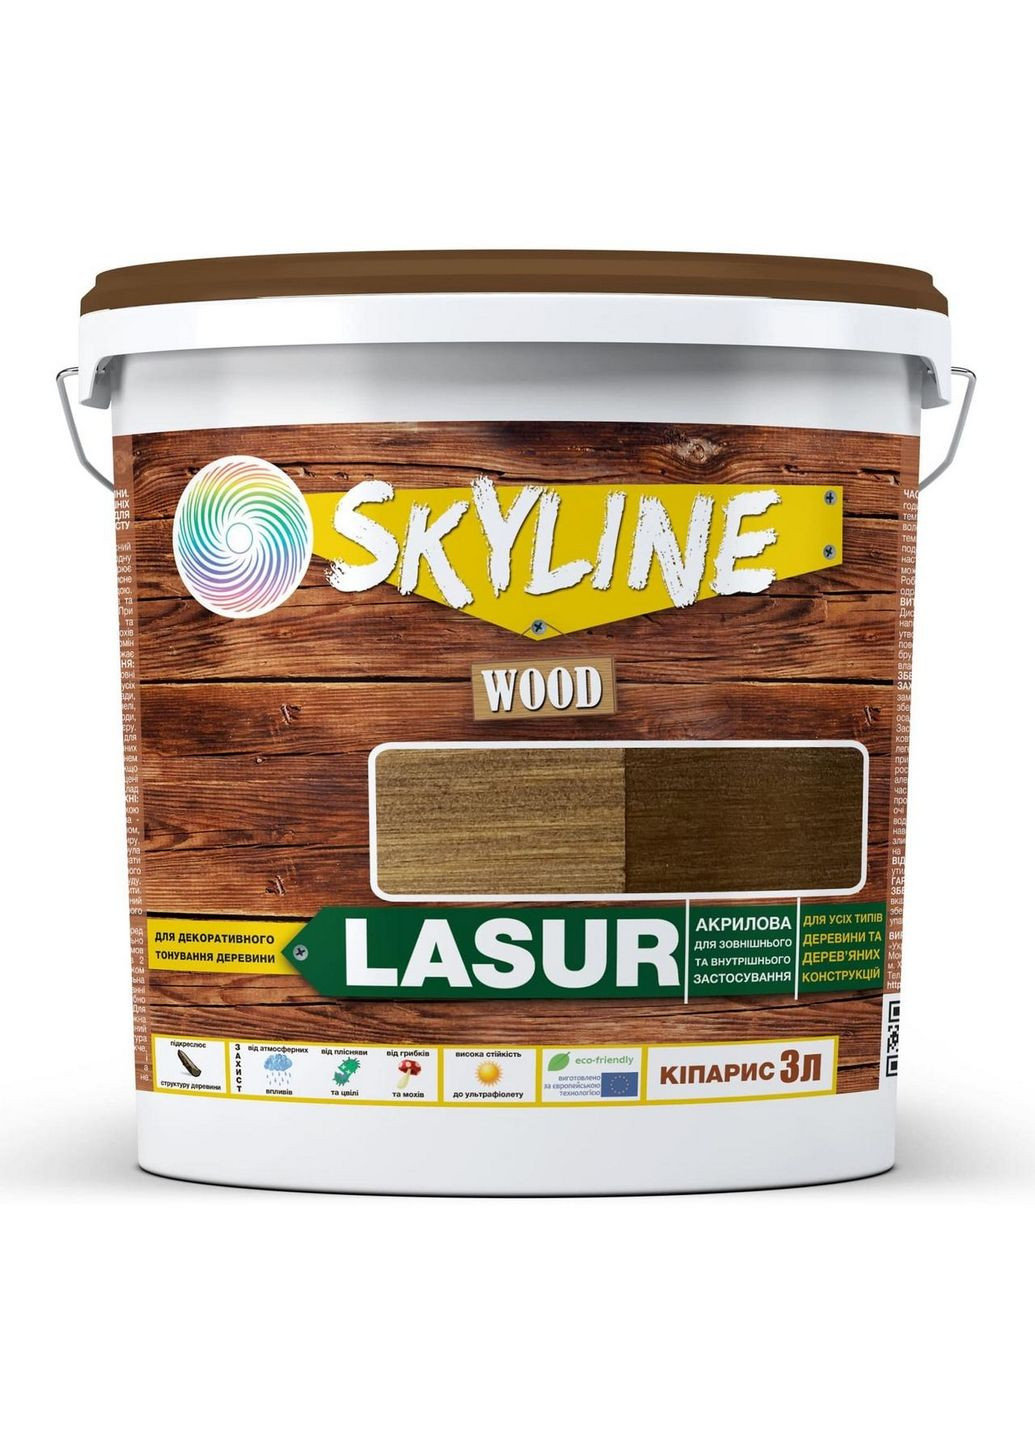 Лазурь декоративно-защитная для обработки дерева LASUR Wood Кипарис 3л SkyLine (283327393)